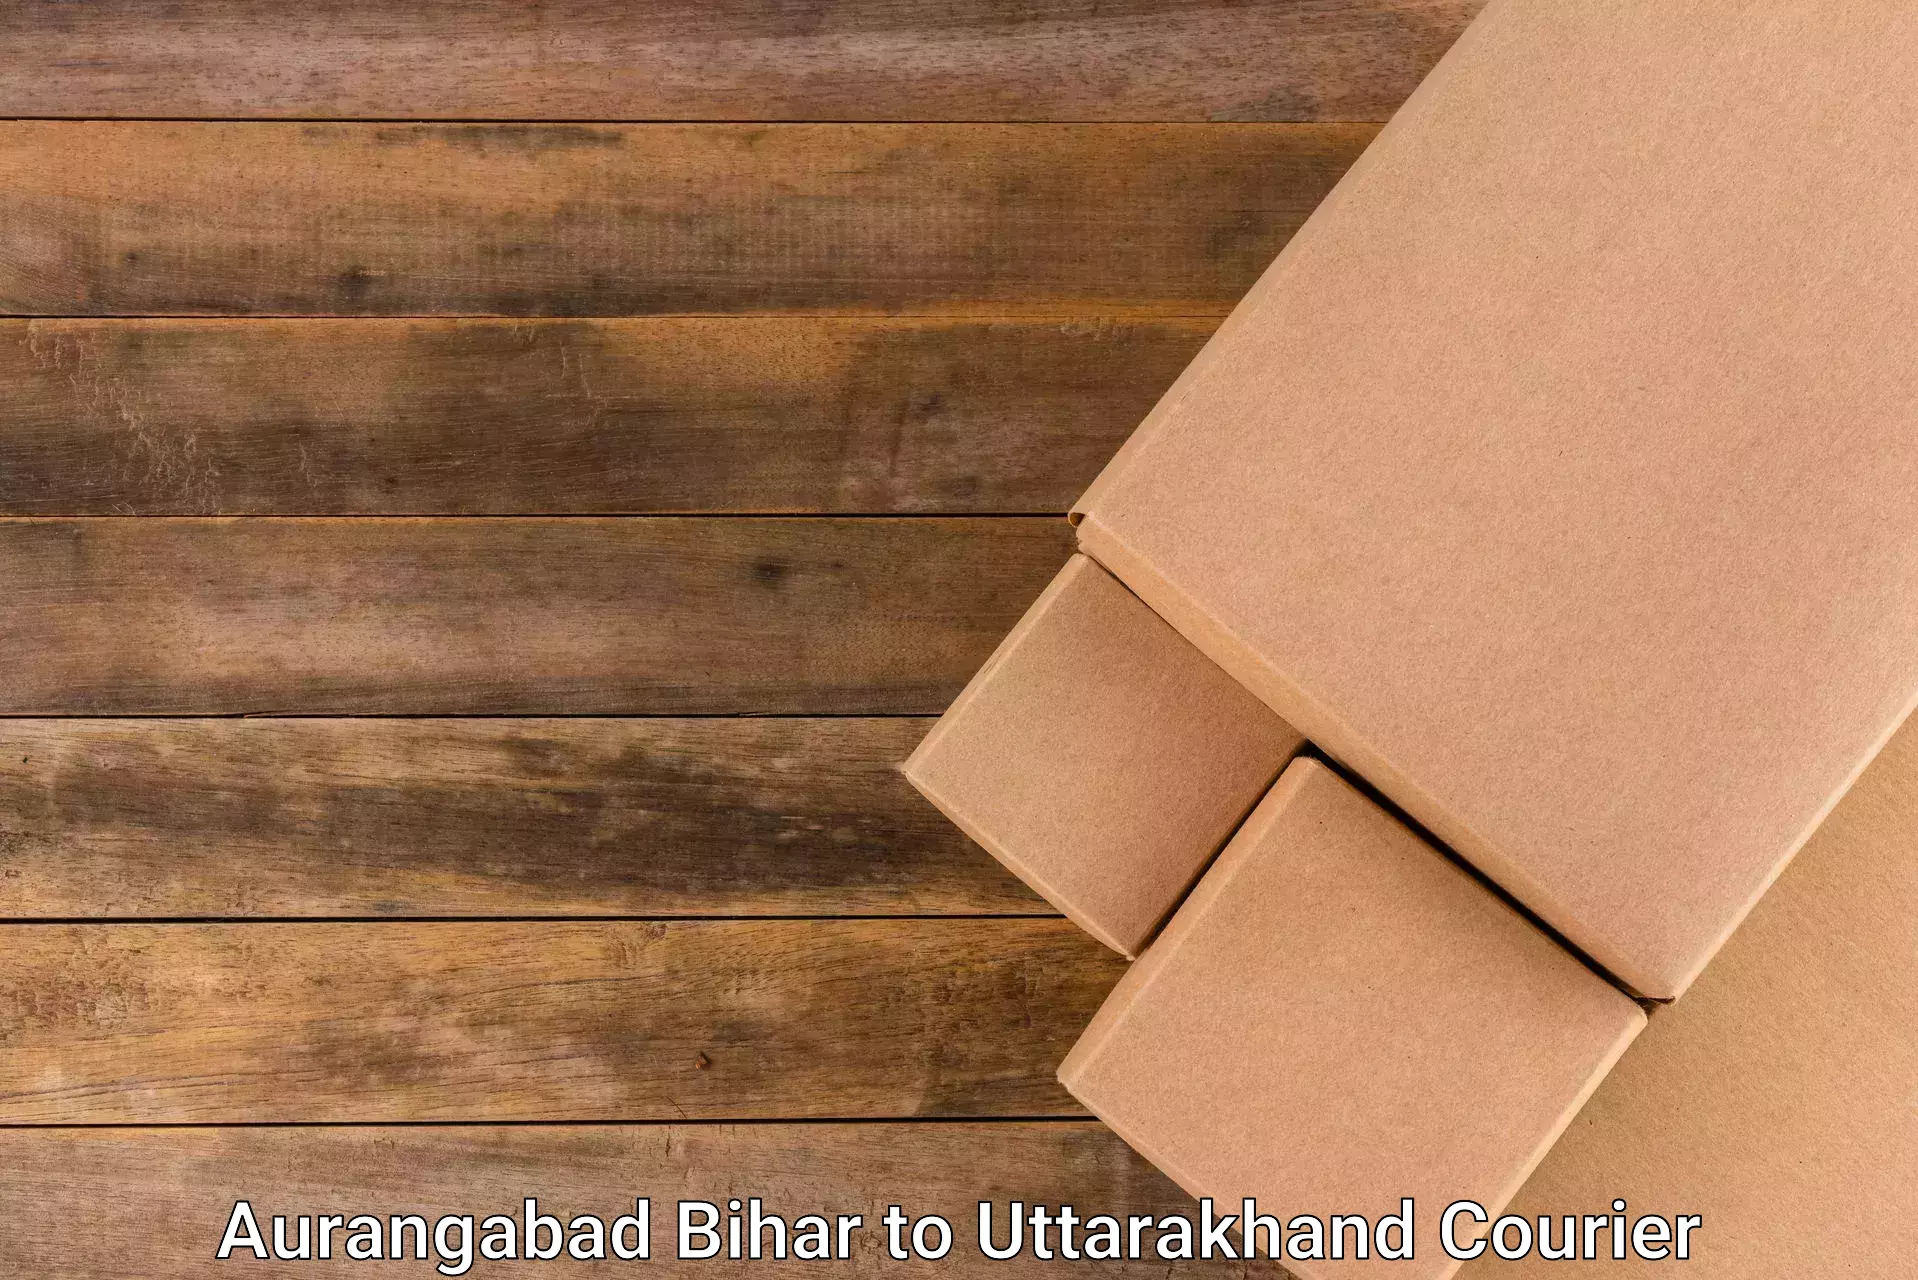 Reliable parcel services Aurangabad Bihar to Bhimtal